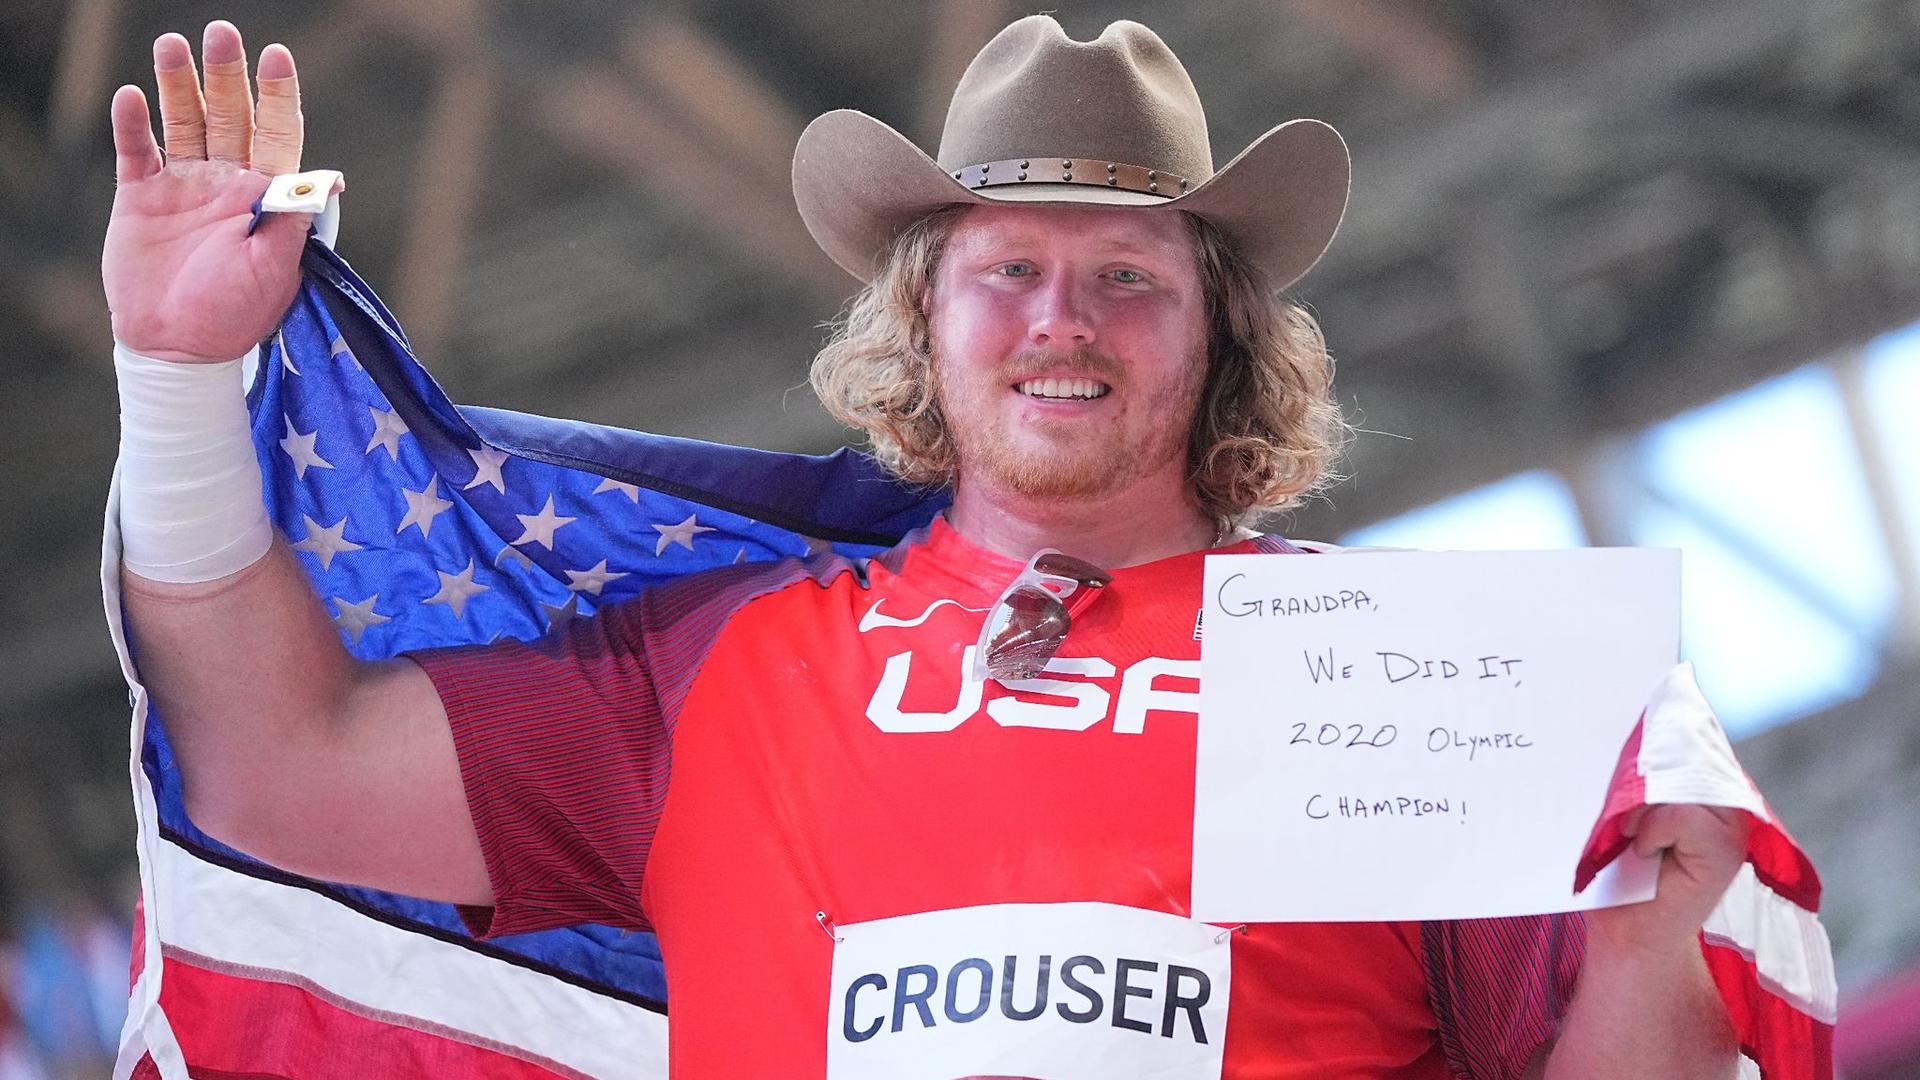 US-Kugelstoßer Ryan Crouser hatte nach dem Olympiasieg auch eine Nachricht an seinen Großvater.